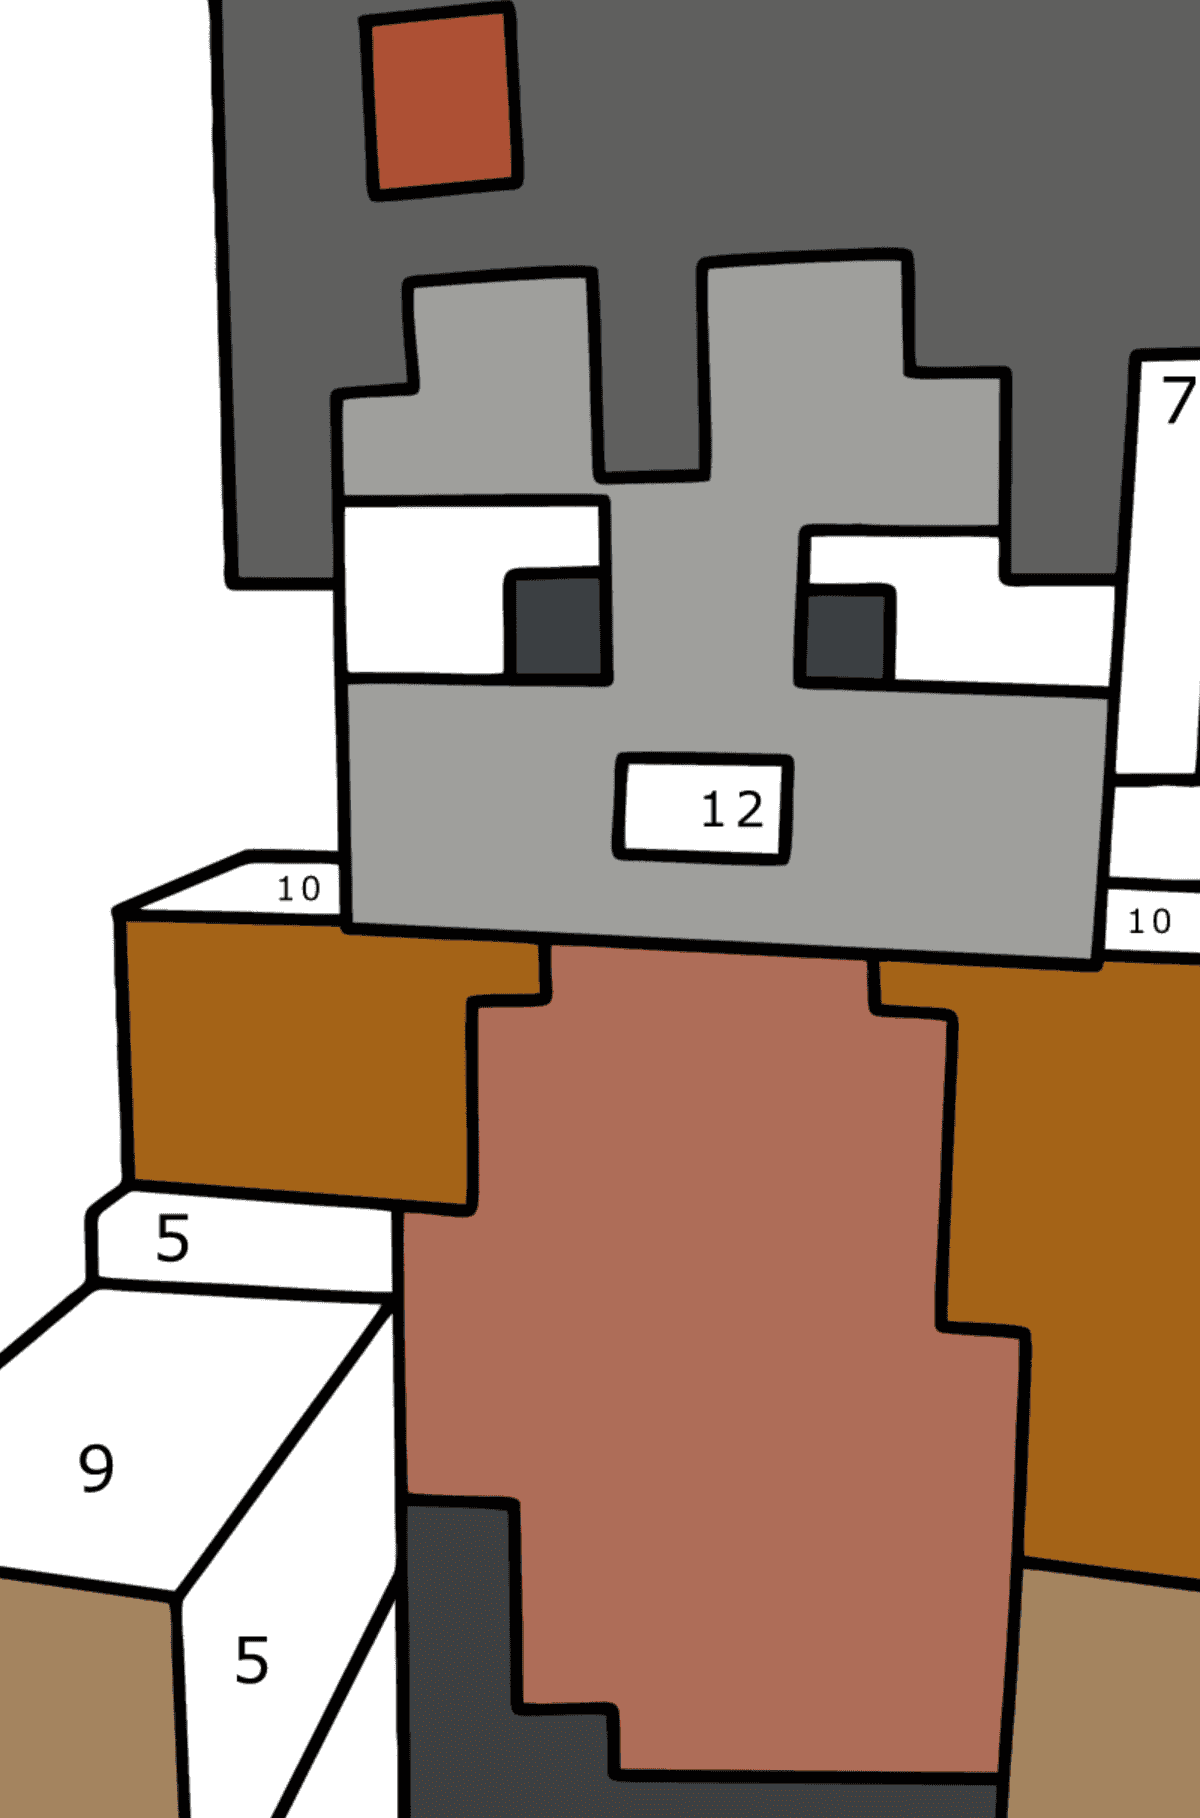 Boyama sayfası Minecraft Stampy - Sayılarla Boyama çocuklar için